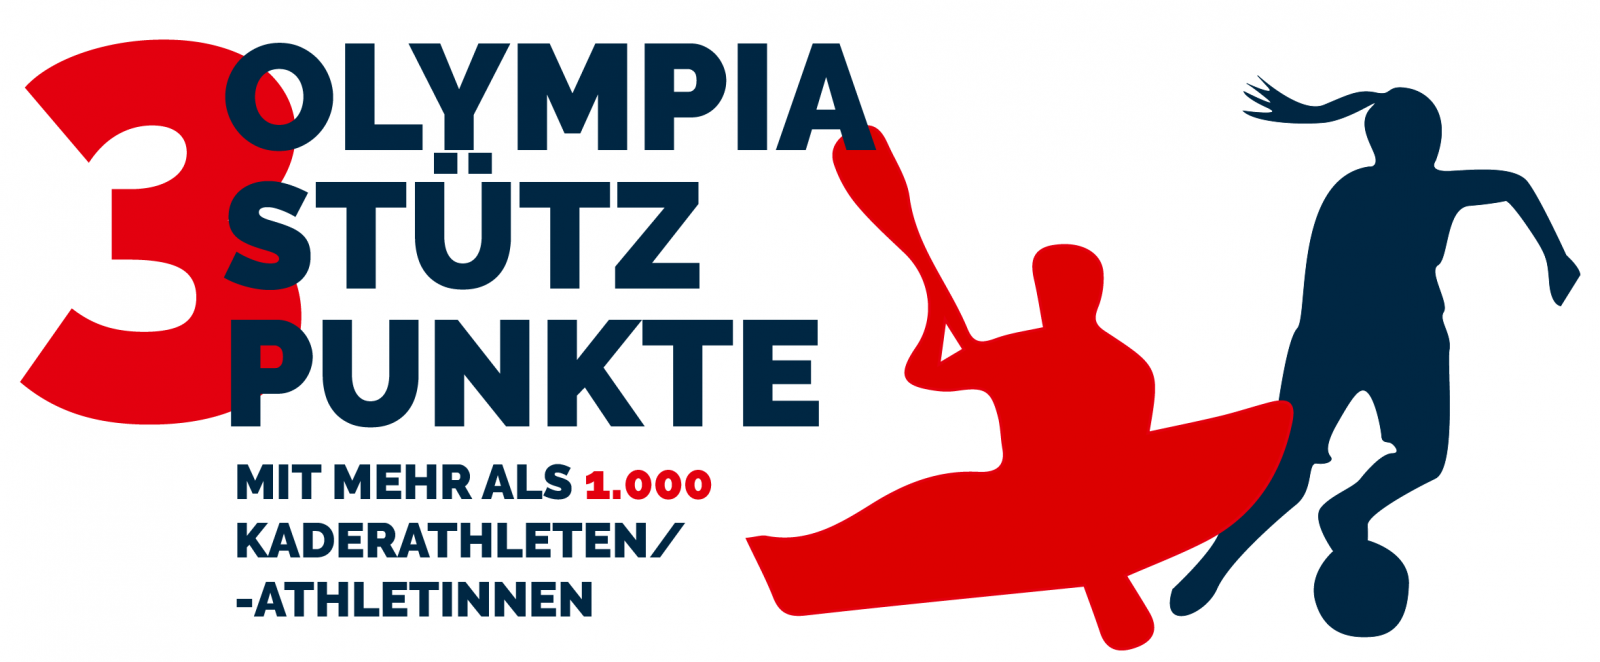 Die Grafik zeigt ein weißes Plakat mit der Aufschrift "3 Olympia Stützüunkte mit mehr als 1000 Kaderathletien/-athletinnen", rechts daneben die Silhouetten von einem Kanufahrer in Rot und einer Fußballspielerin in schwarz.